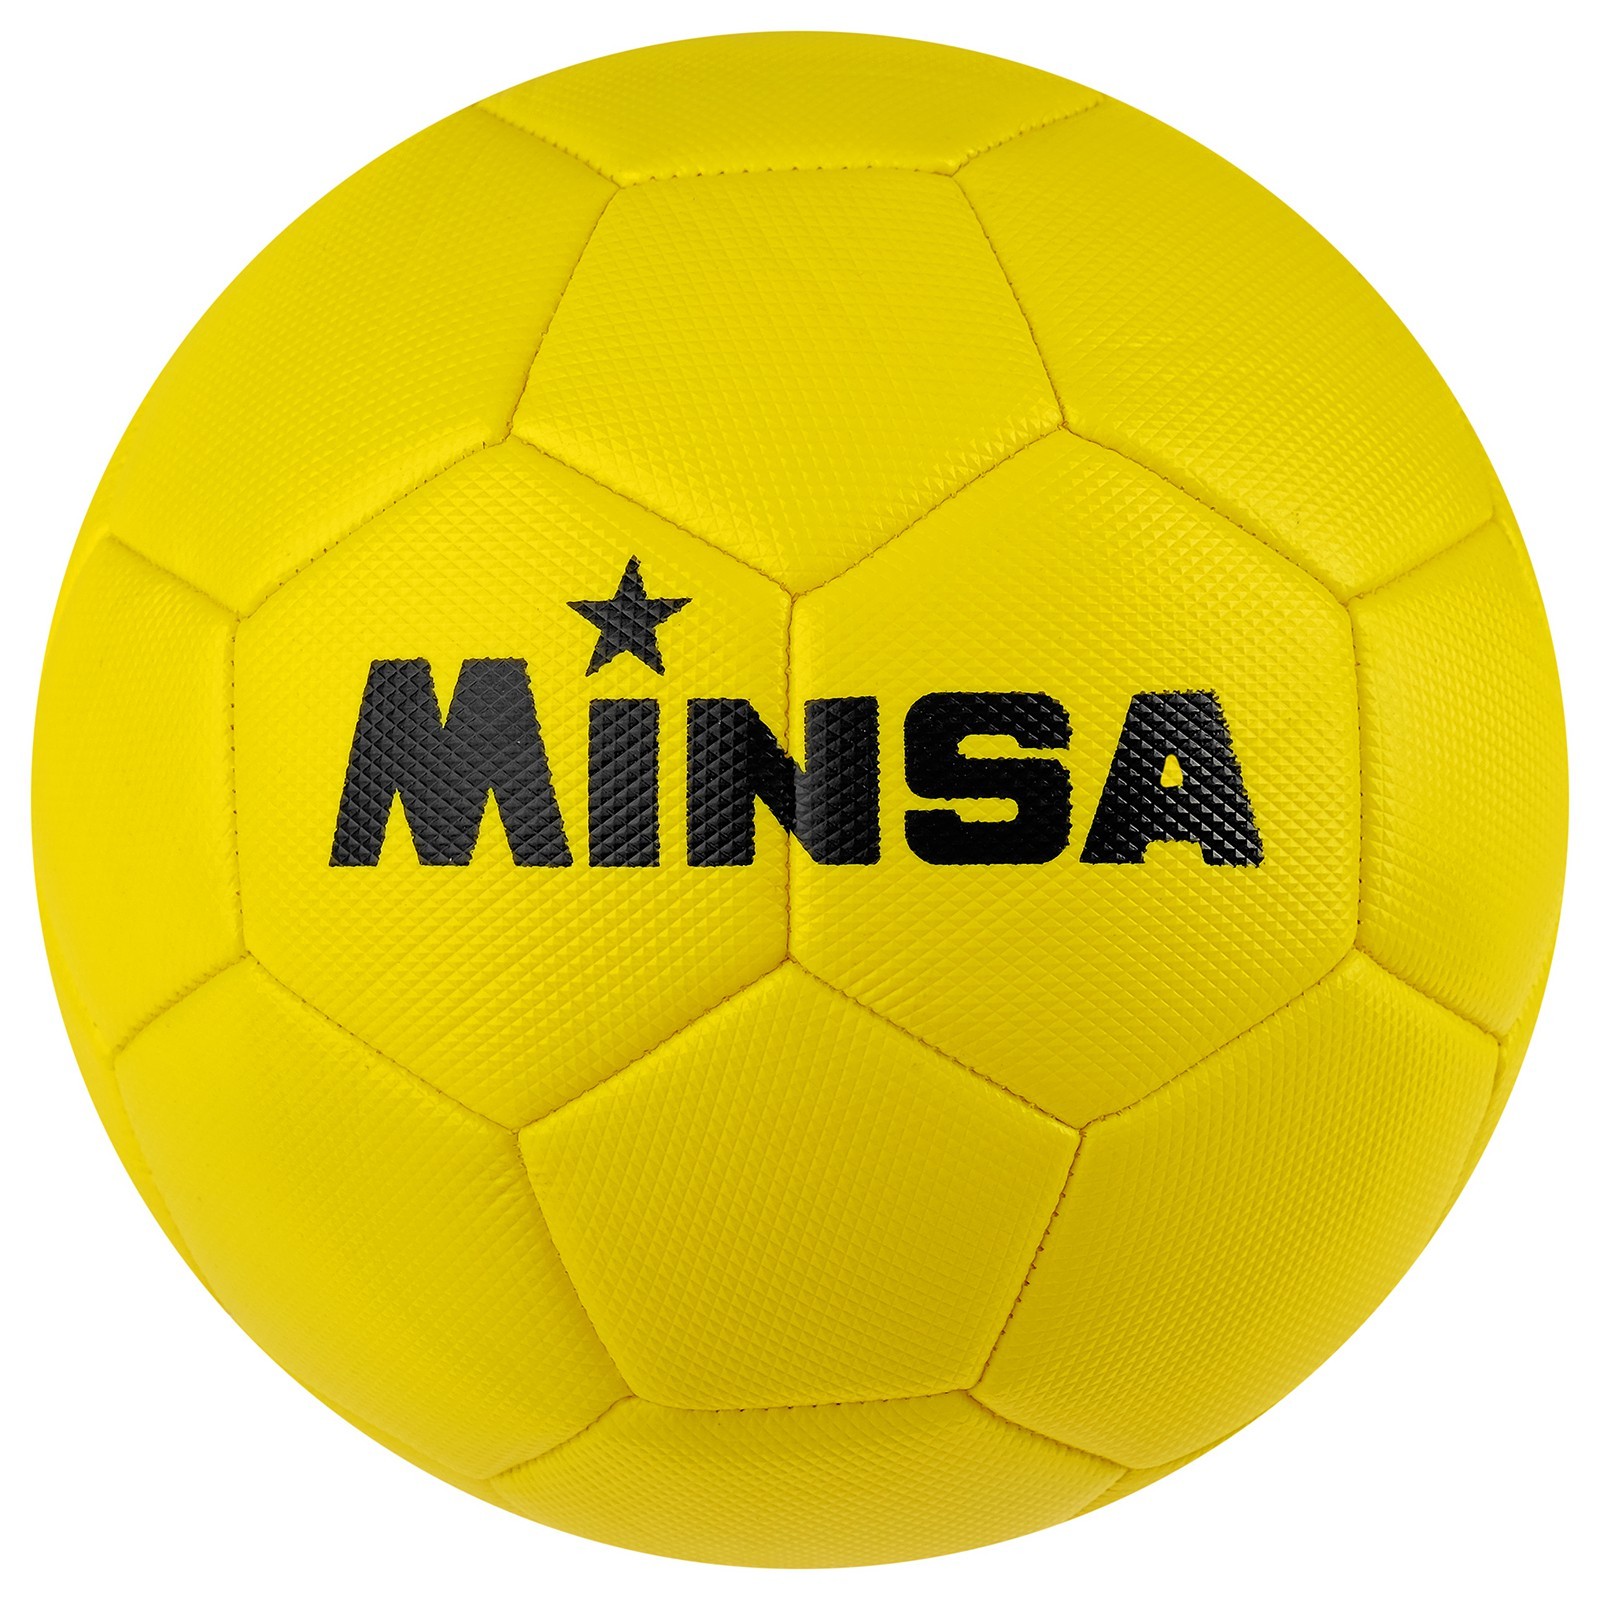 Мяч футбольный MINSA, размер 5, 32 панели, 3 слойный, цвет жёлтый 4481930